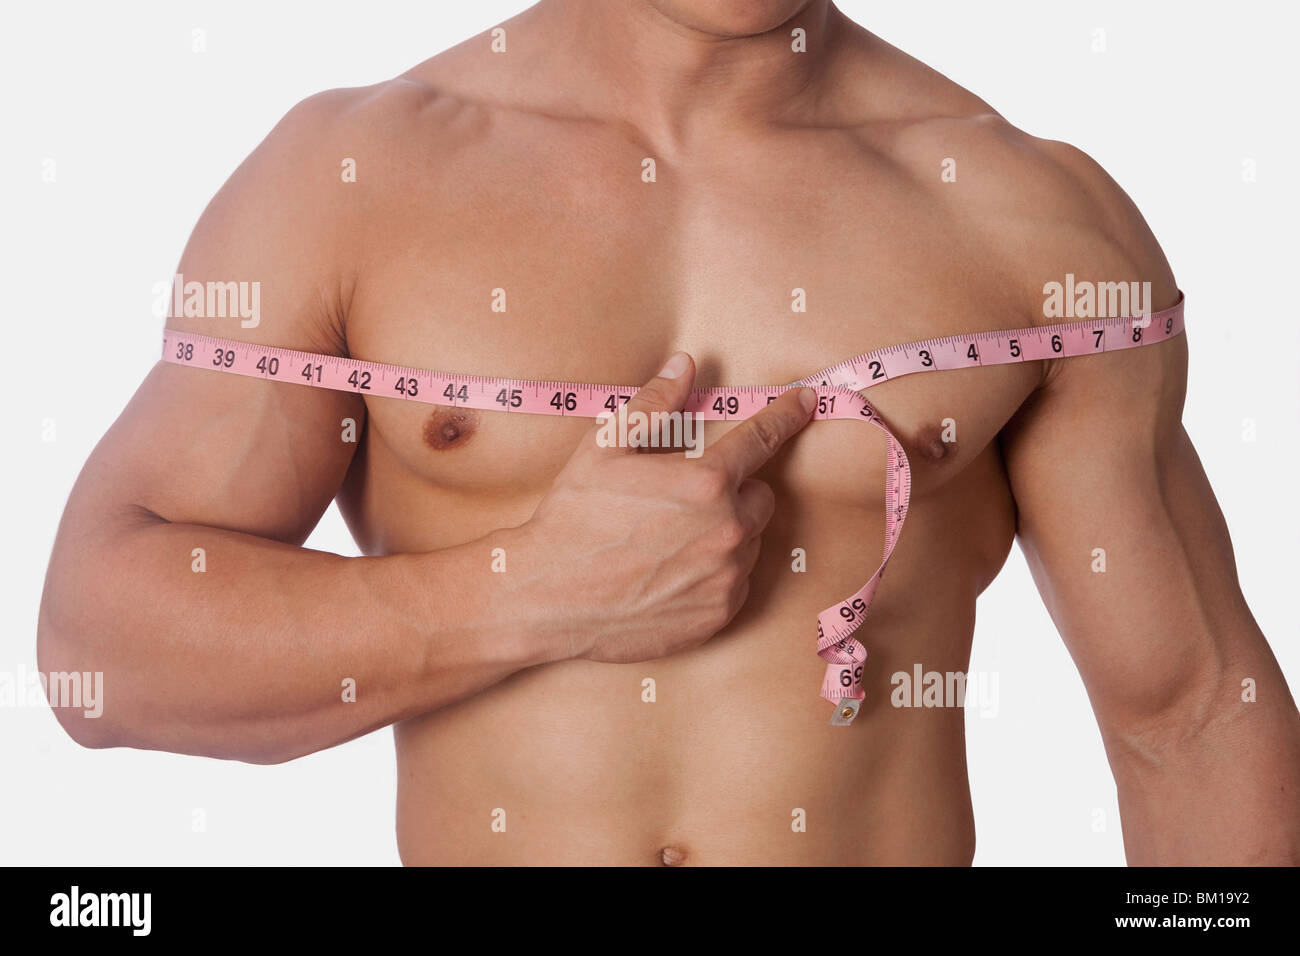 норма обхвата груди у мужчин фото 22